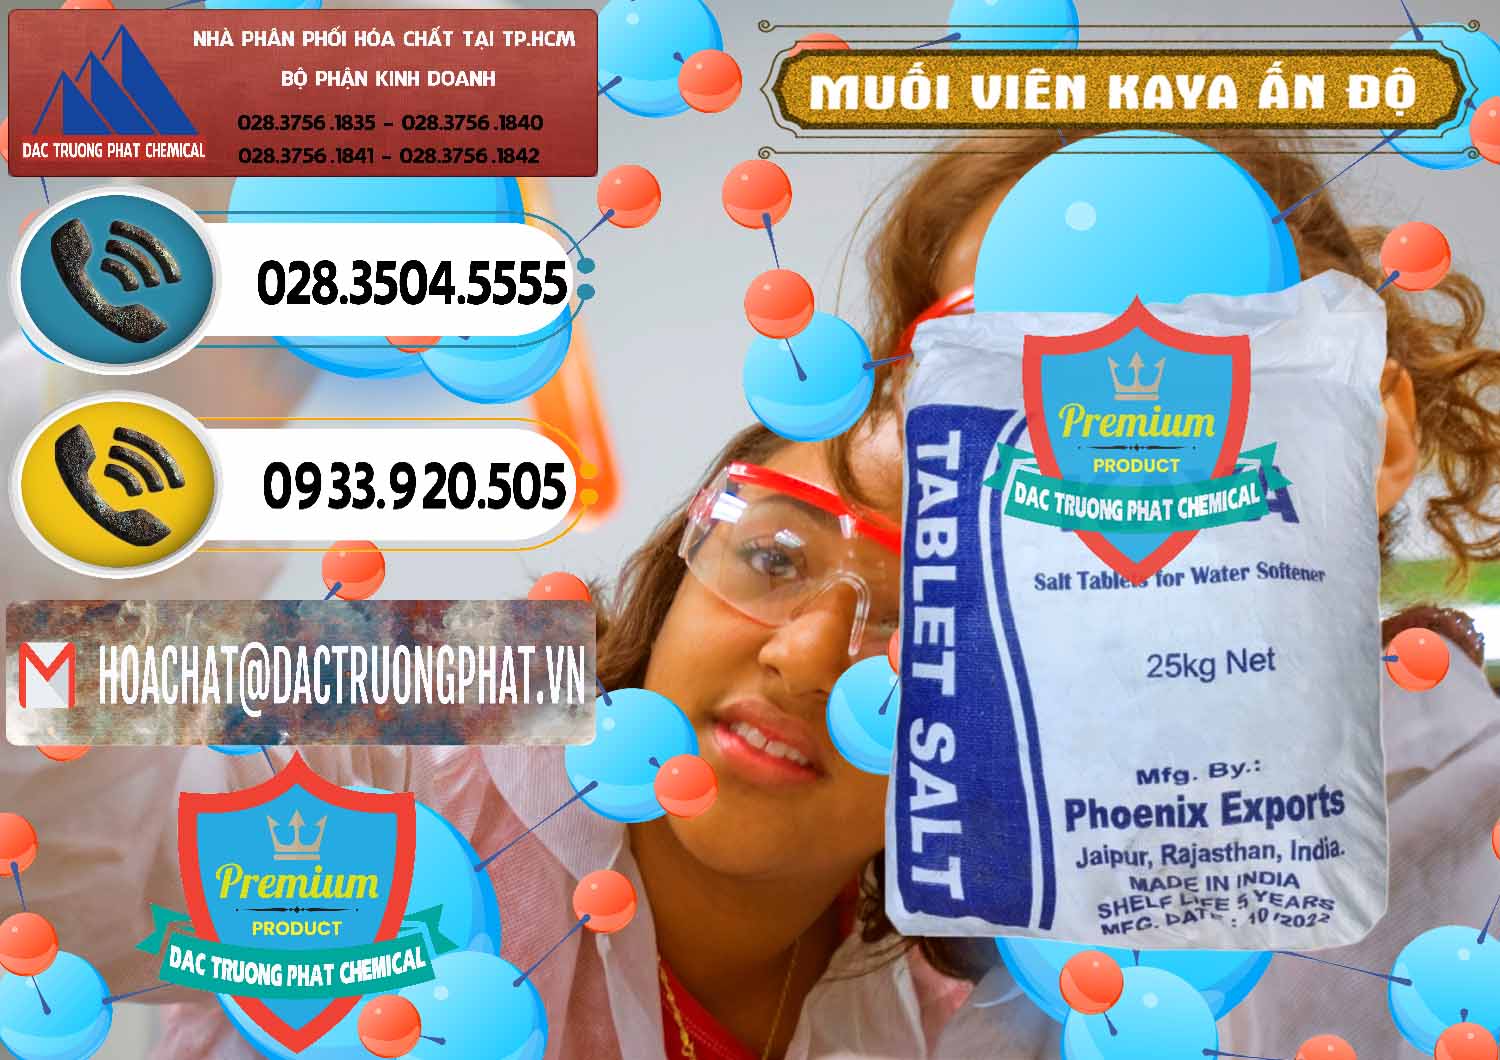 Cty bán & cung ứng Muối NaCL – Sodium Chloride Dạng Viên Tablets Kaya Ấn Độ India - 0368 - Chuyên cung ứng và phân phối hóa chất tại TP.HCM - hoachatdetnhuom.vn